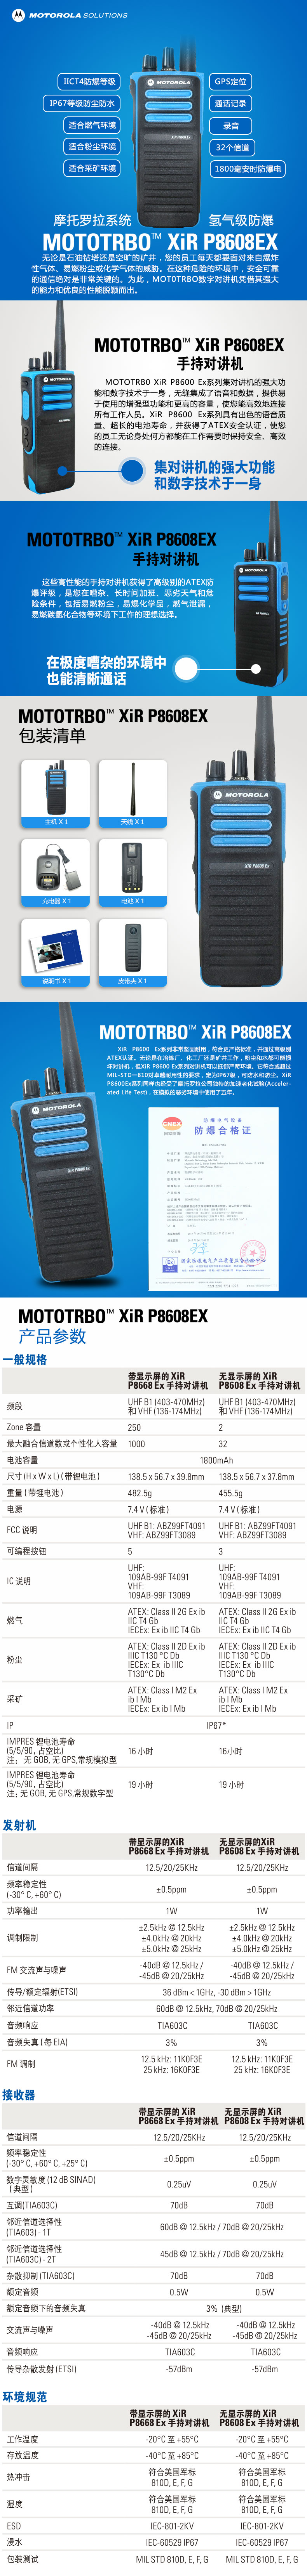 摩托罗拉防爆对讲机XIR P8608 EX